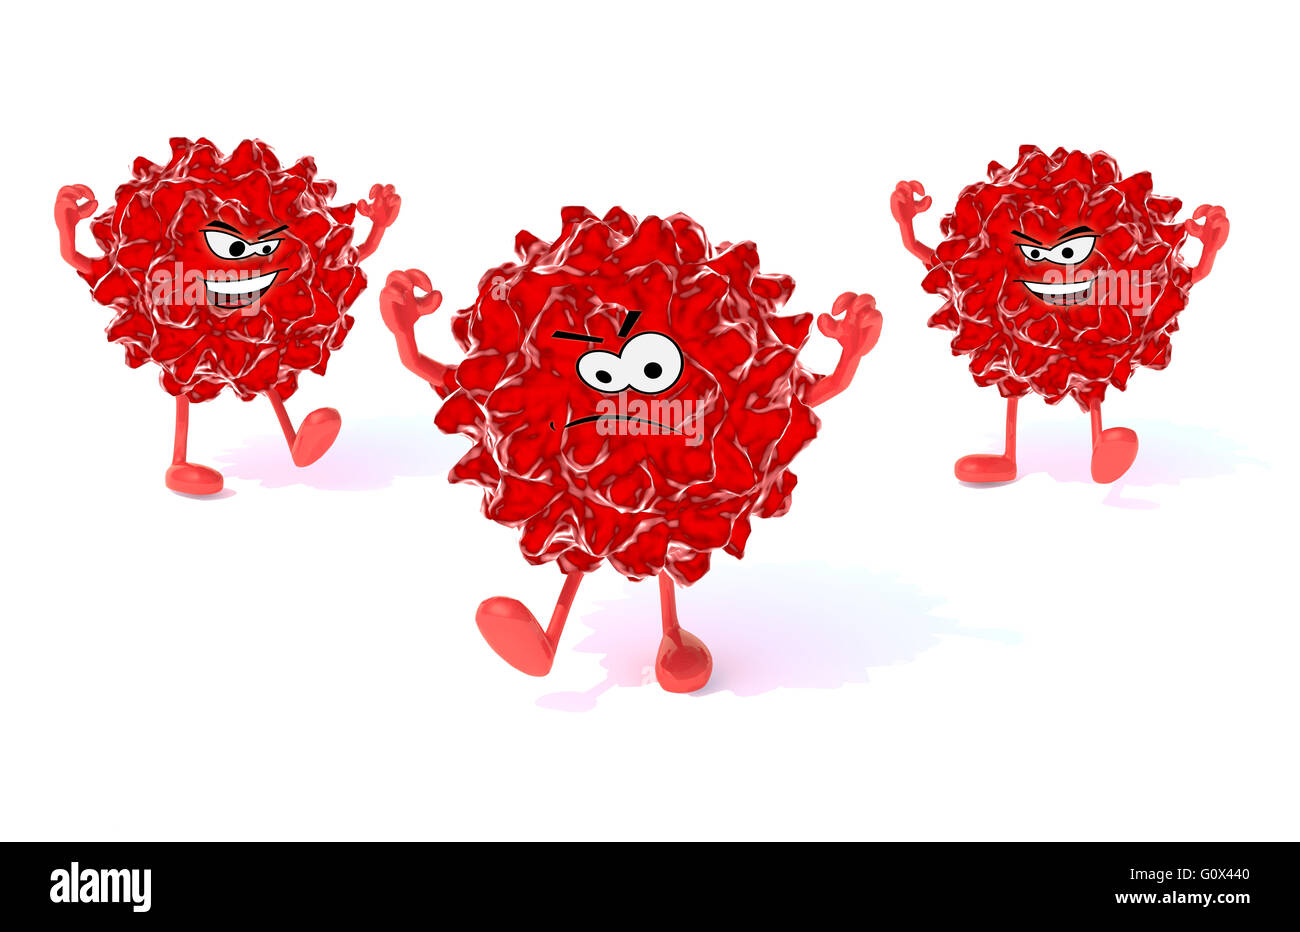 drei rote Virus mit Armen, Beinen und Gesicht, 3d illustration Stockfoto